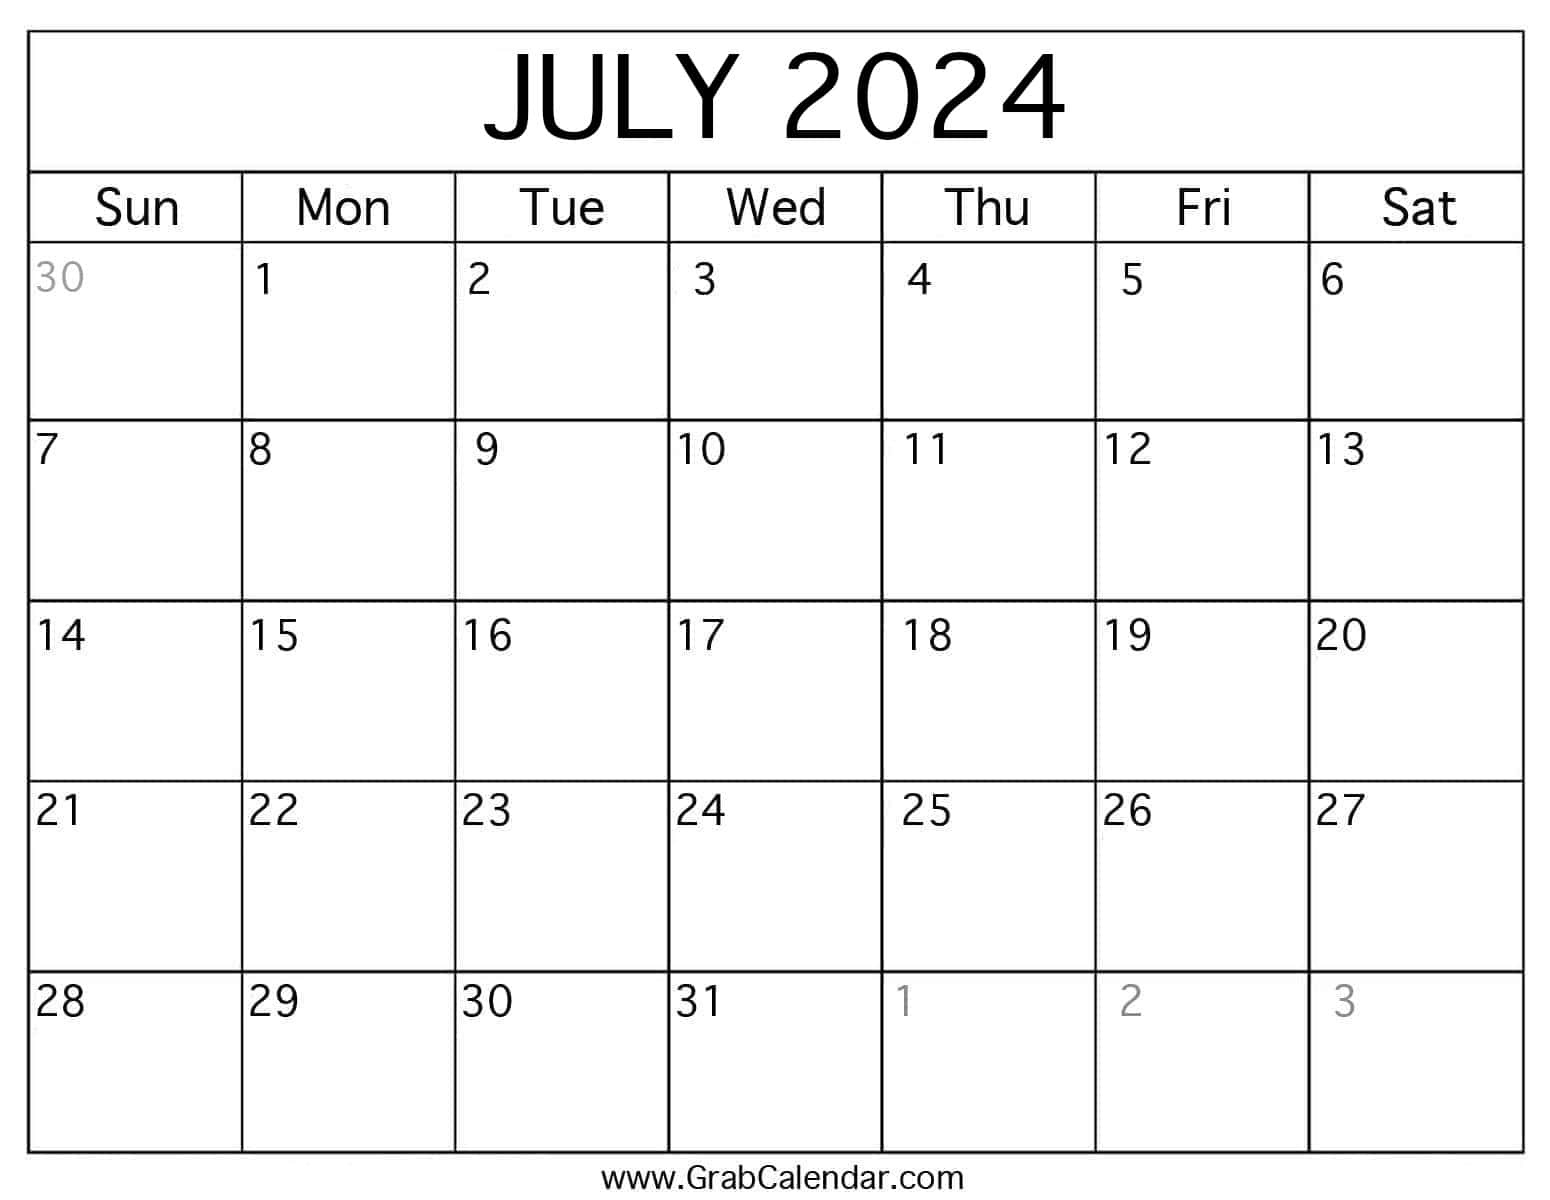 Printable July 2024 Calendar regarding July 2024 Weekly Calendar Printable